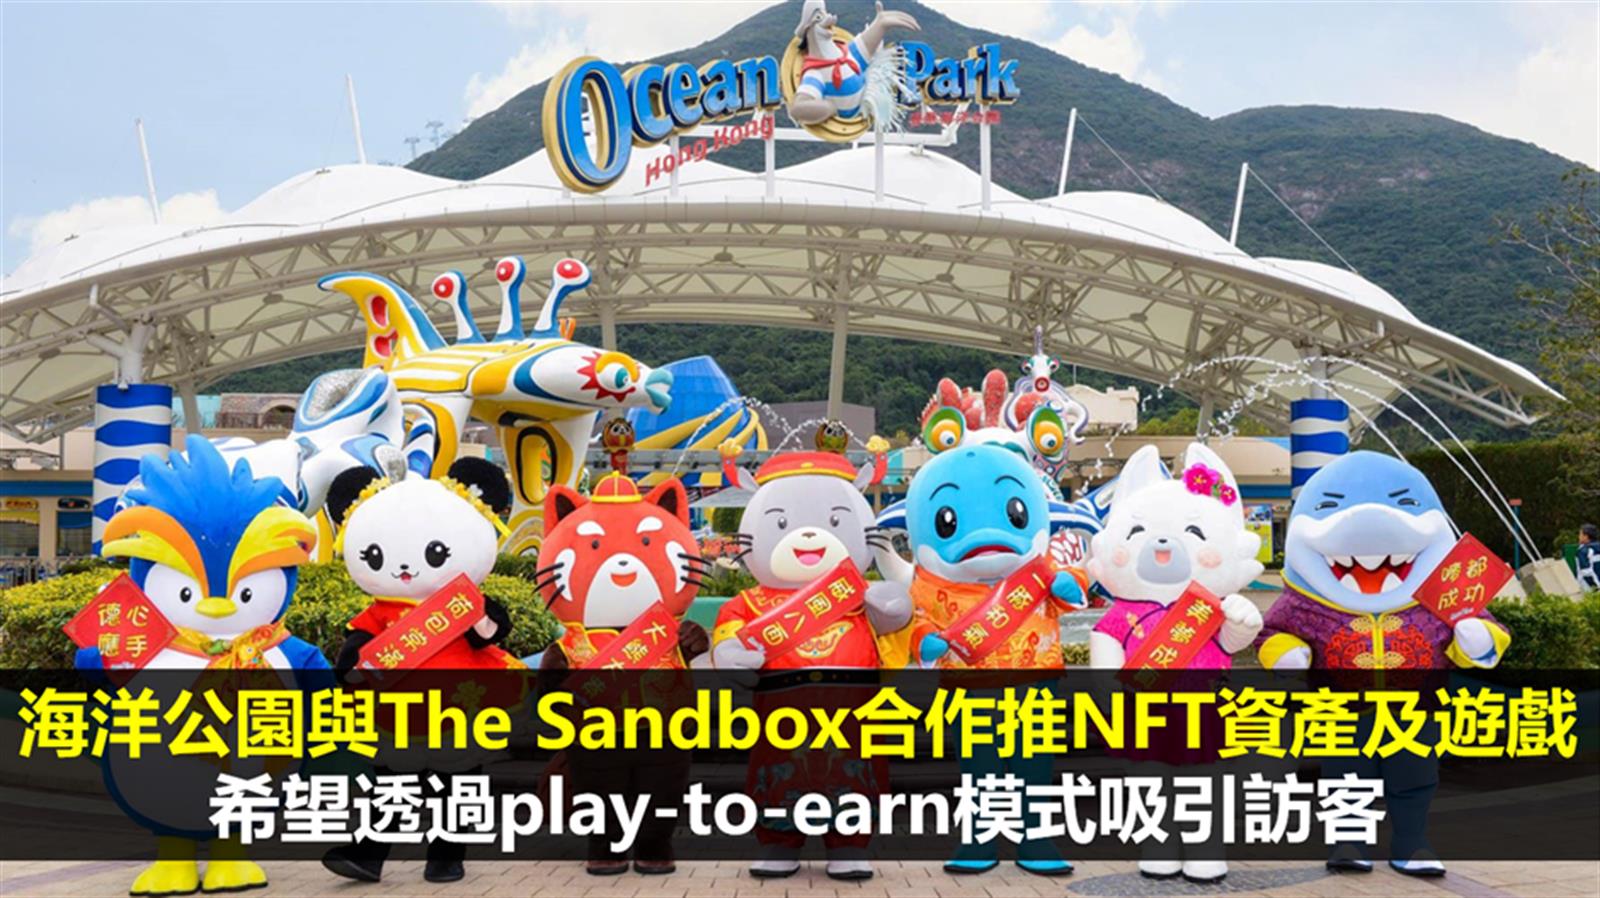 海洋公園與The Sandbox合作推NFT資產及遊戲　希望透過play-to-earn模式吸引訪客